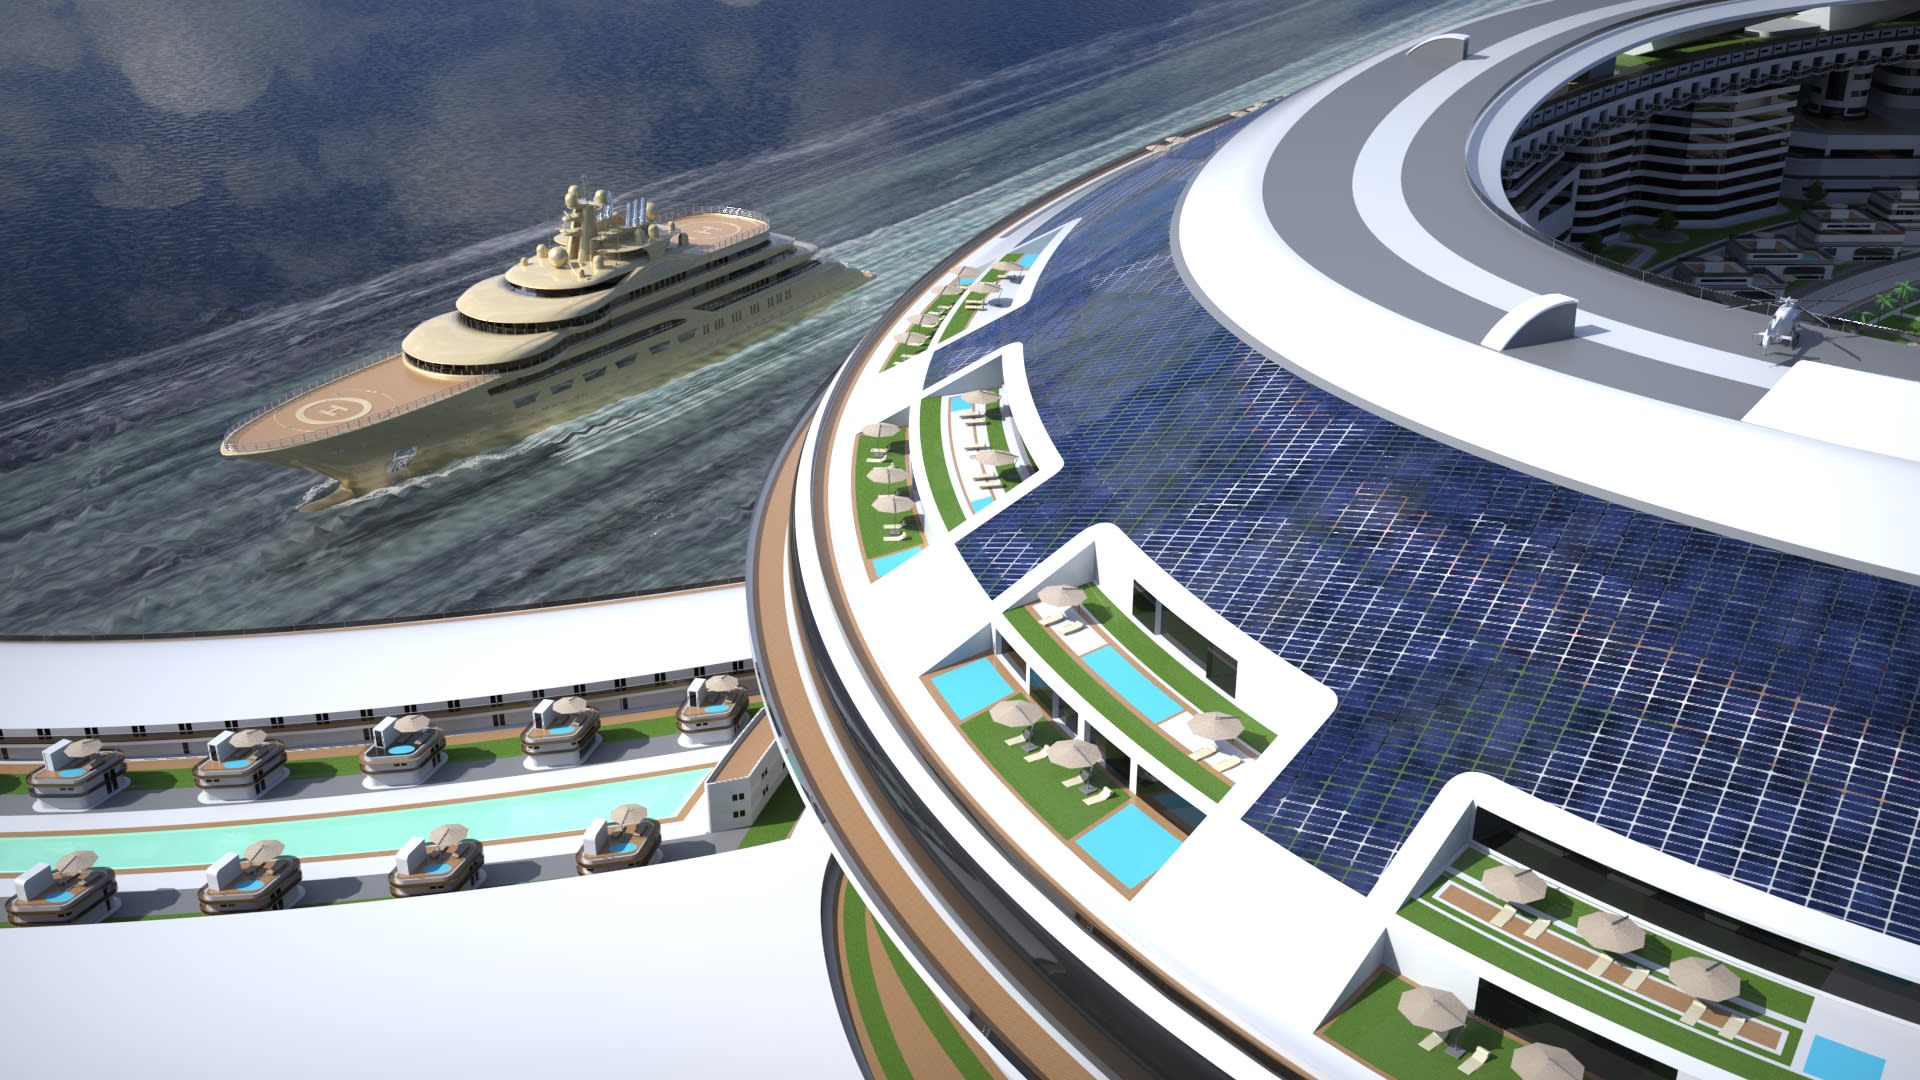 "schwimmende Stadt" In Form einer Schildkröte. Offenlegung von Plänen zum Bau der größten Yacht der Welt in Saudi-Arabien